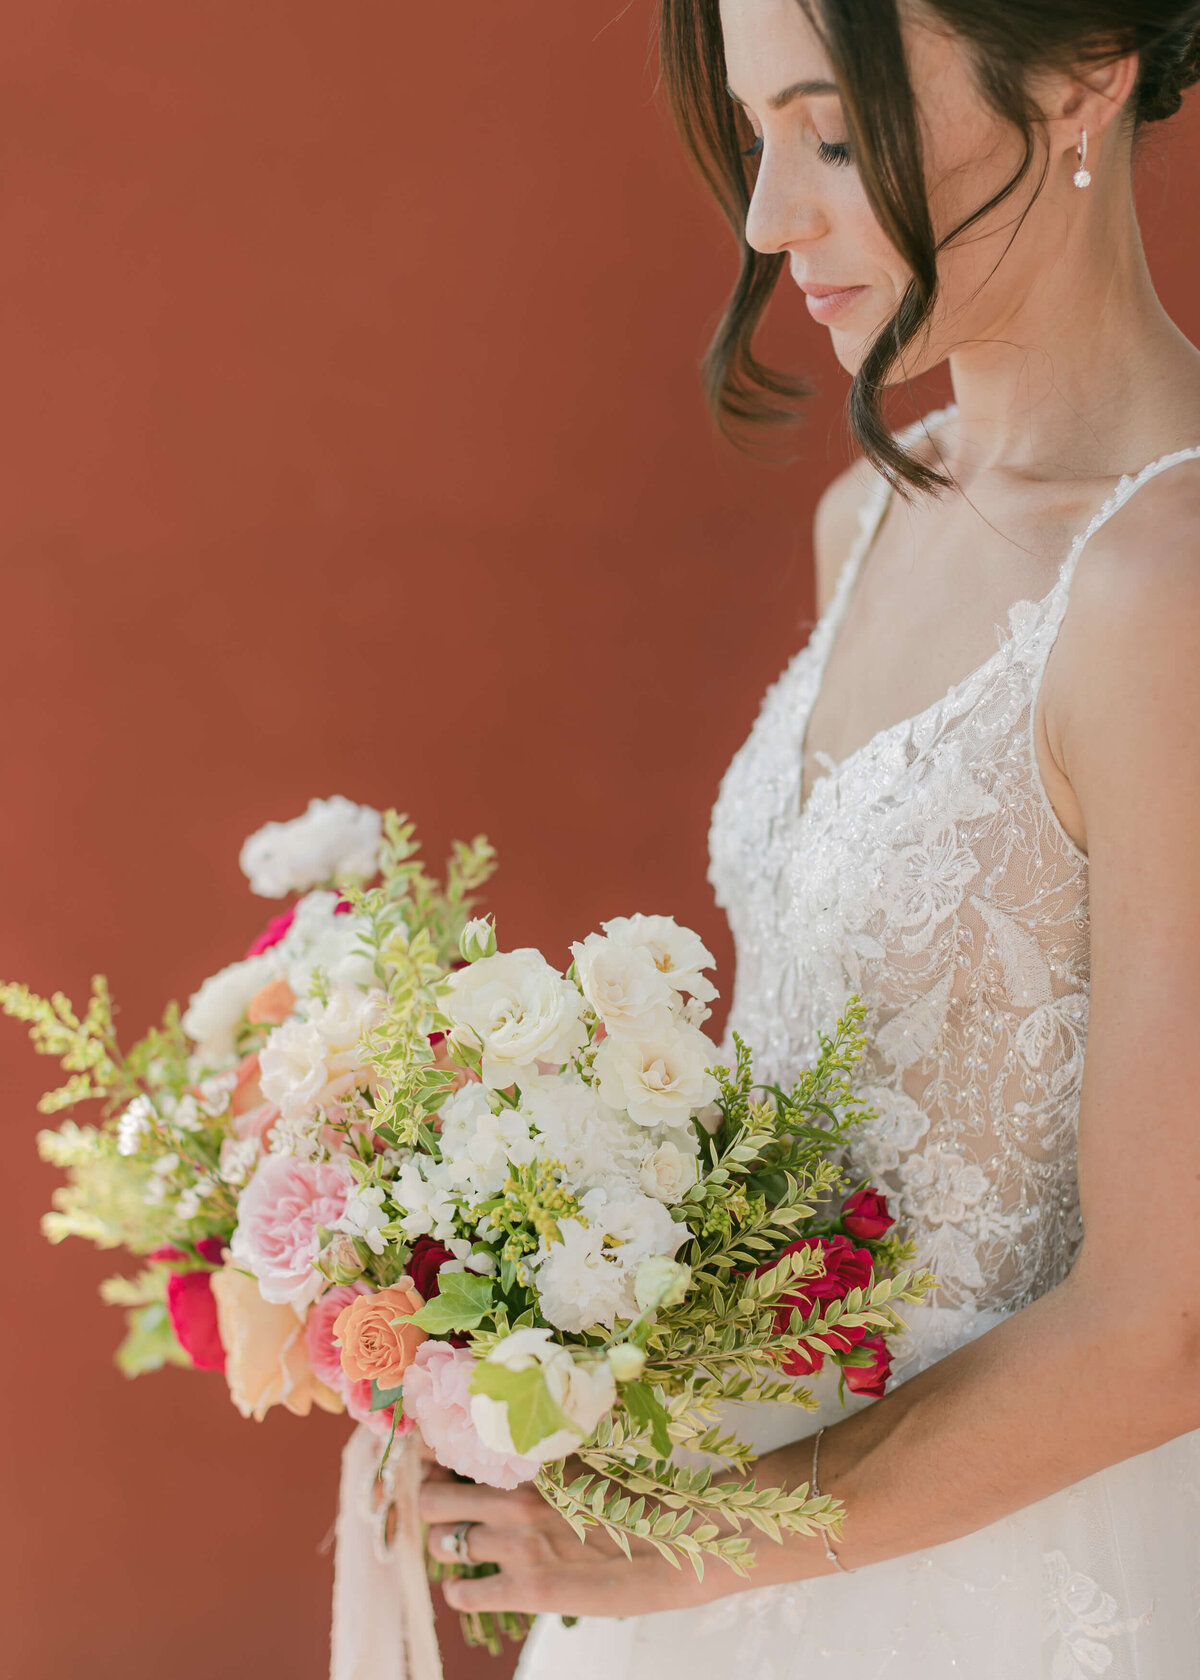 chloe-winstanley-italian-wedding-positano-bride-boquet